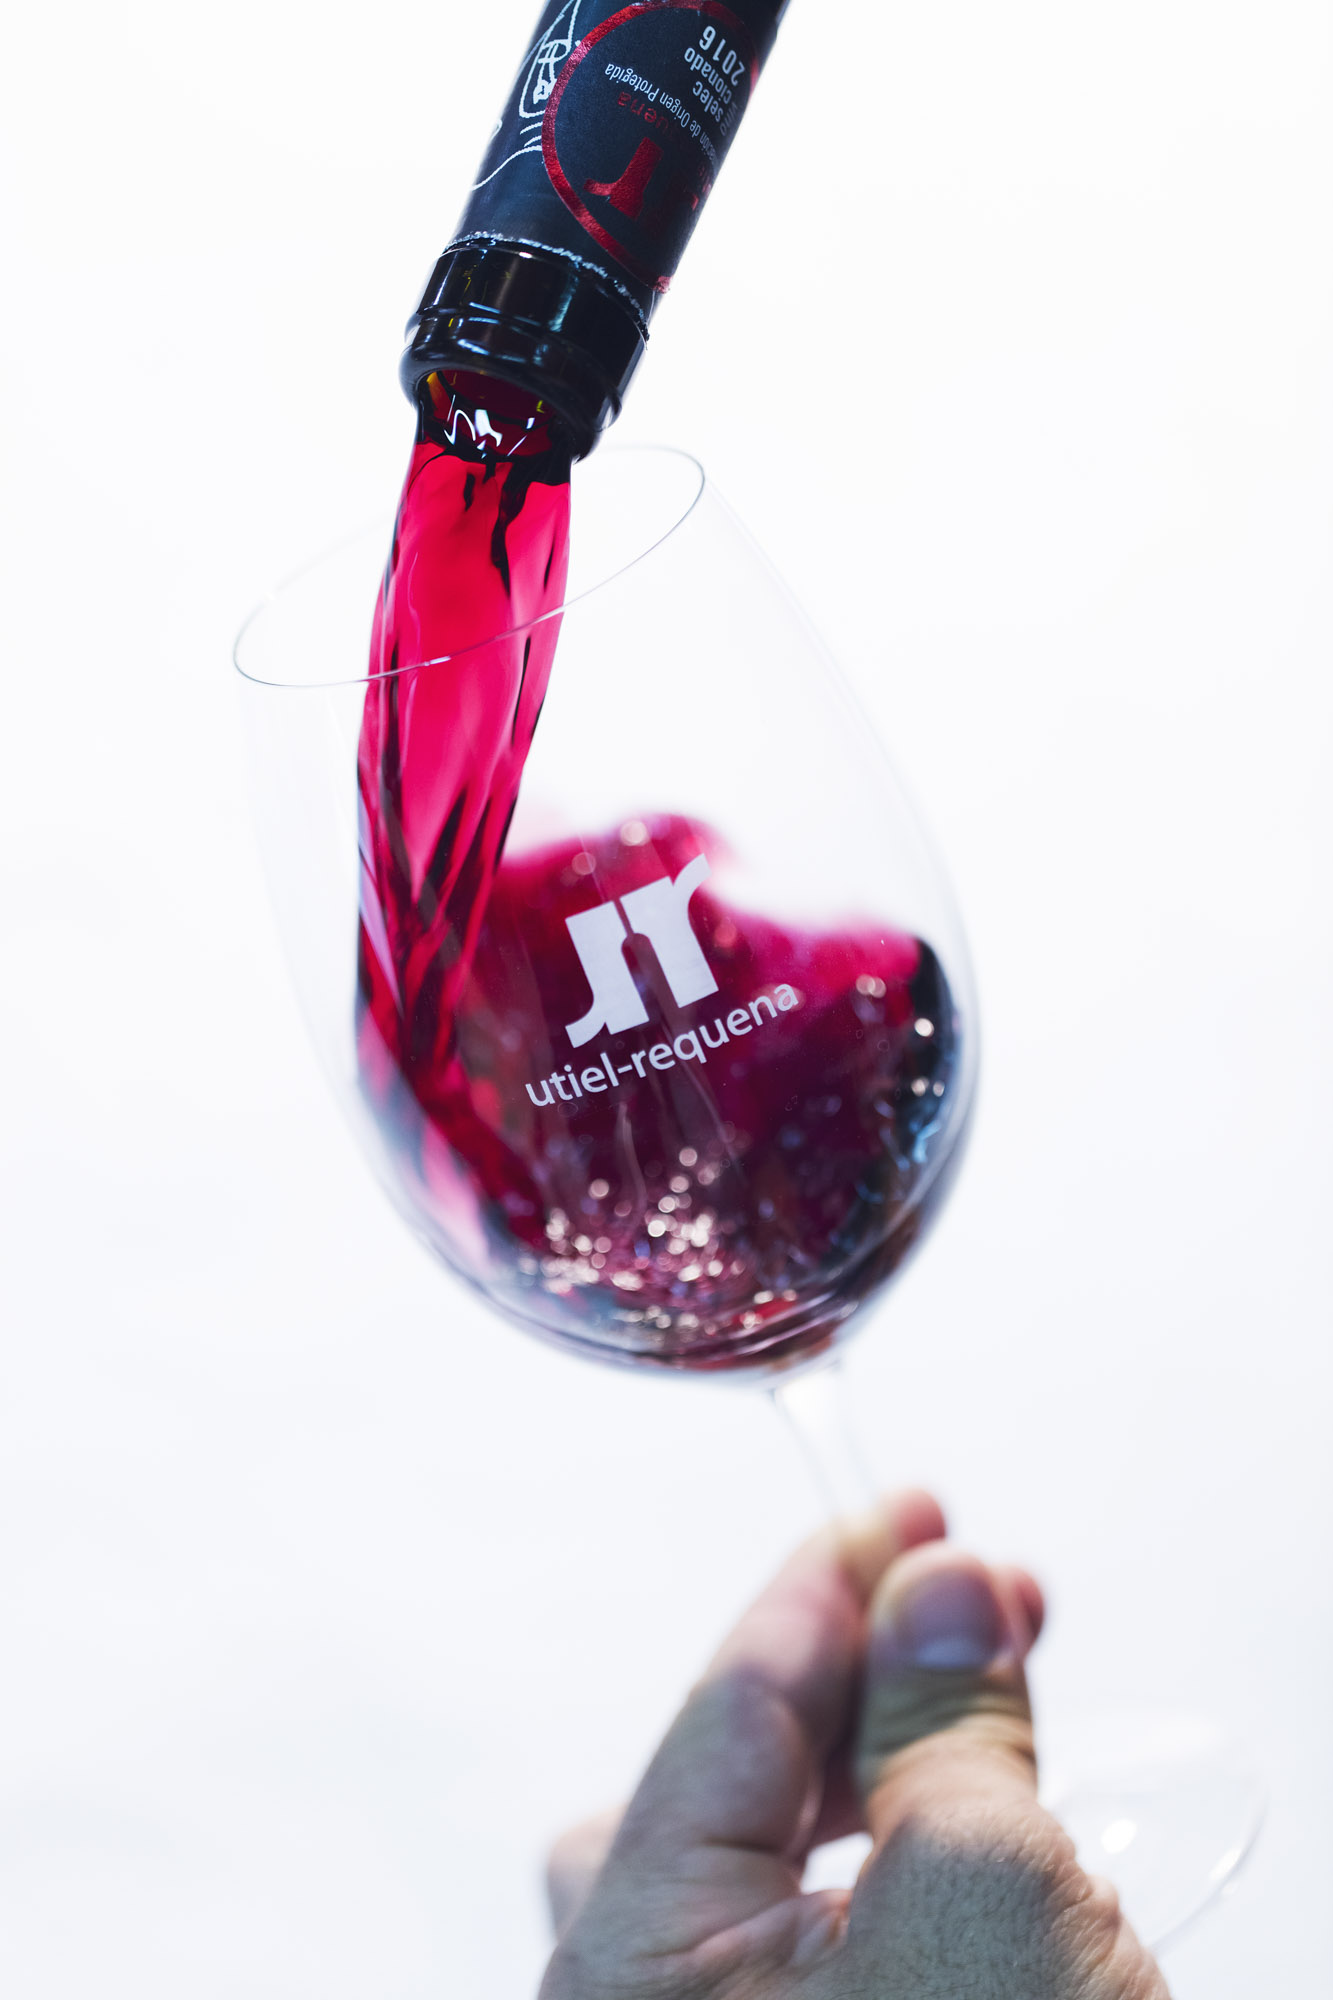 La Guía Repsol viajará a Utiel-Requena para catar cien vinos